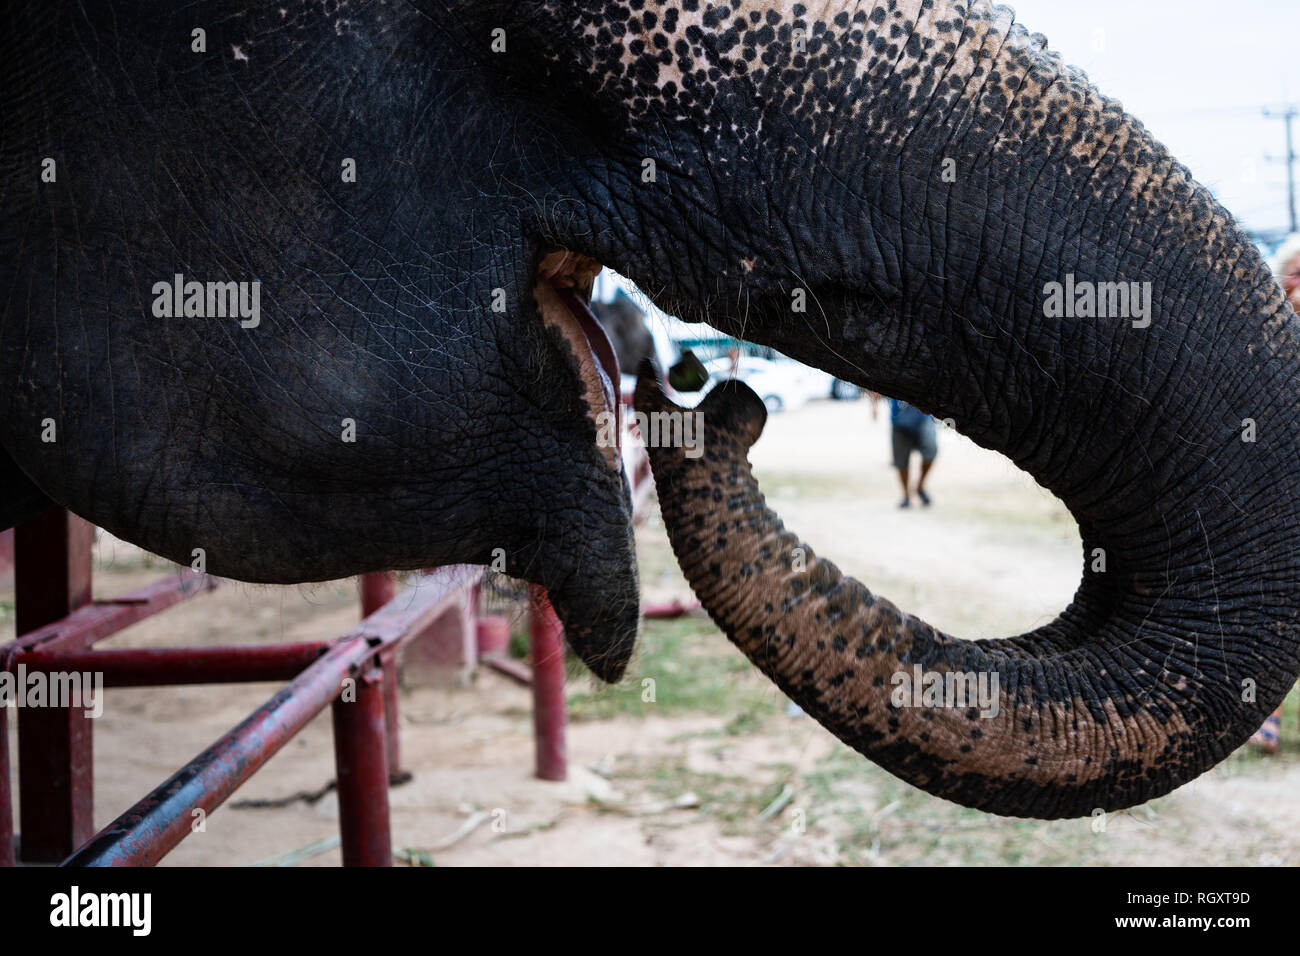 Elephant portrait. Elephant on a nature background.The elephant eats a banana trunk. Closeup elephant mouth Stock Photo